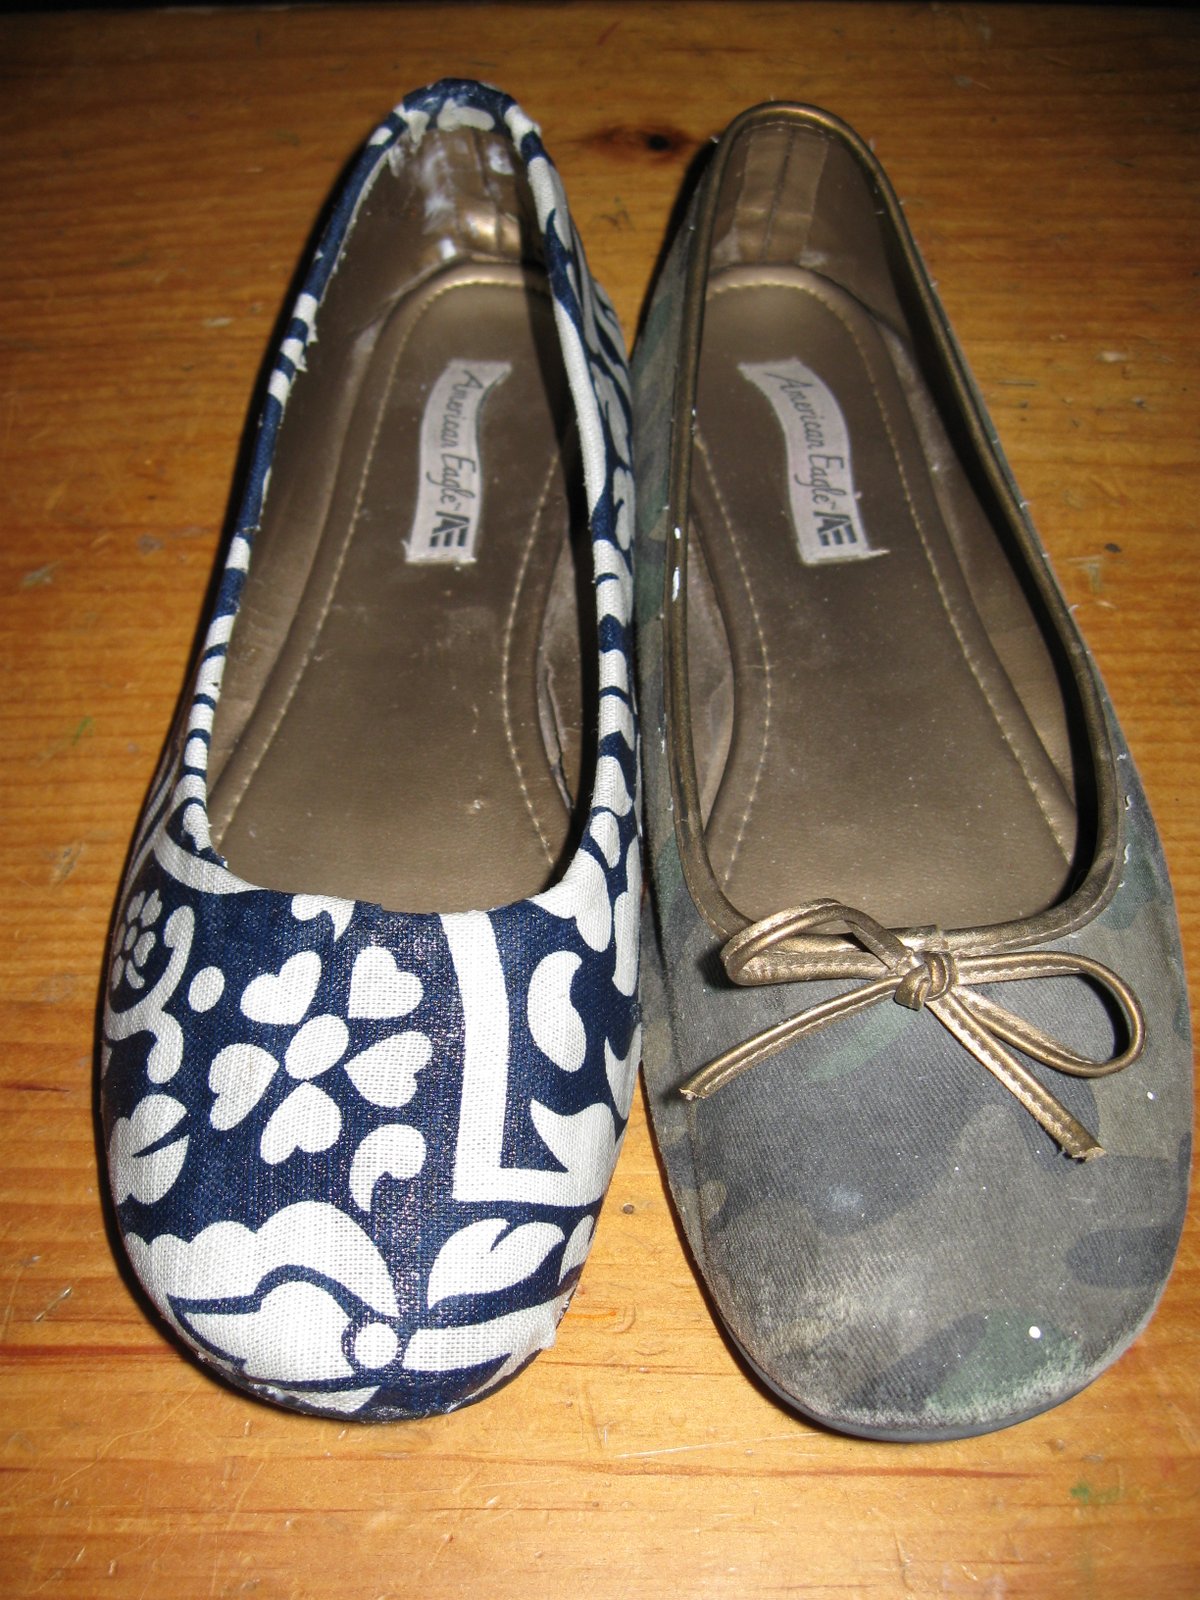 Mattea's Rock 'N Roll Wear: Diamonds on the soles of her shoes...